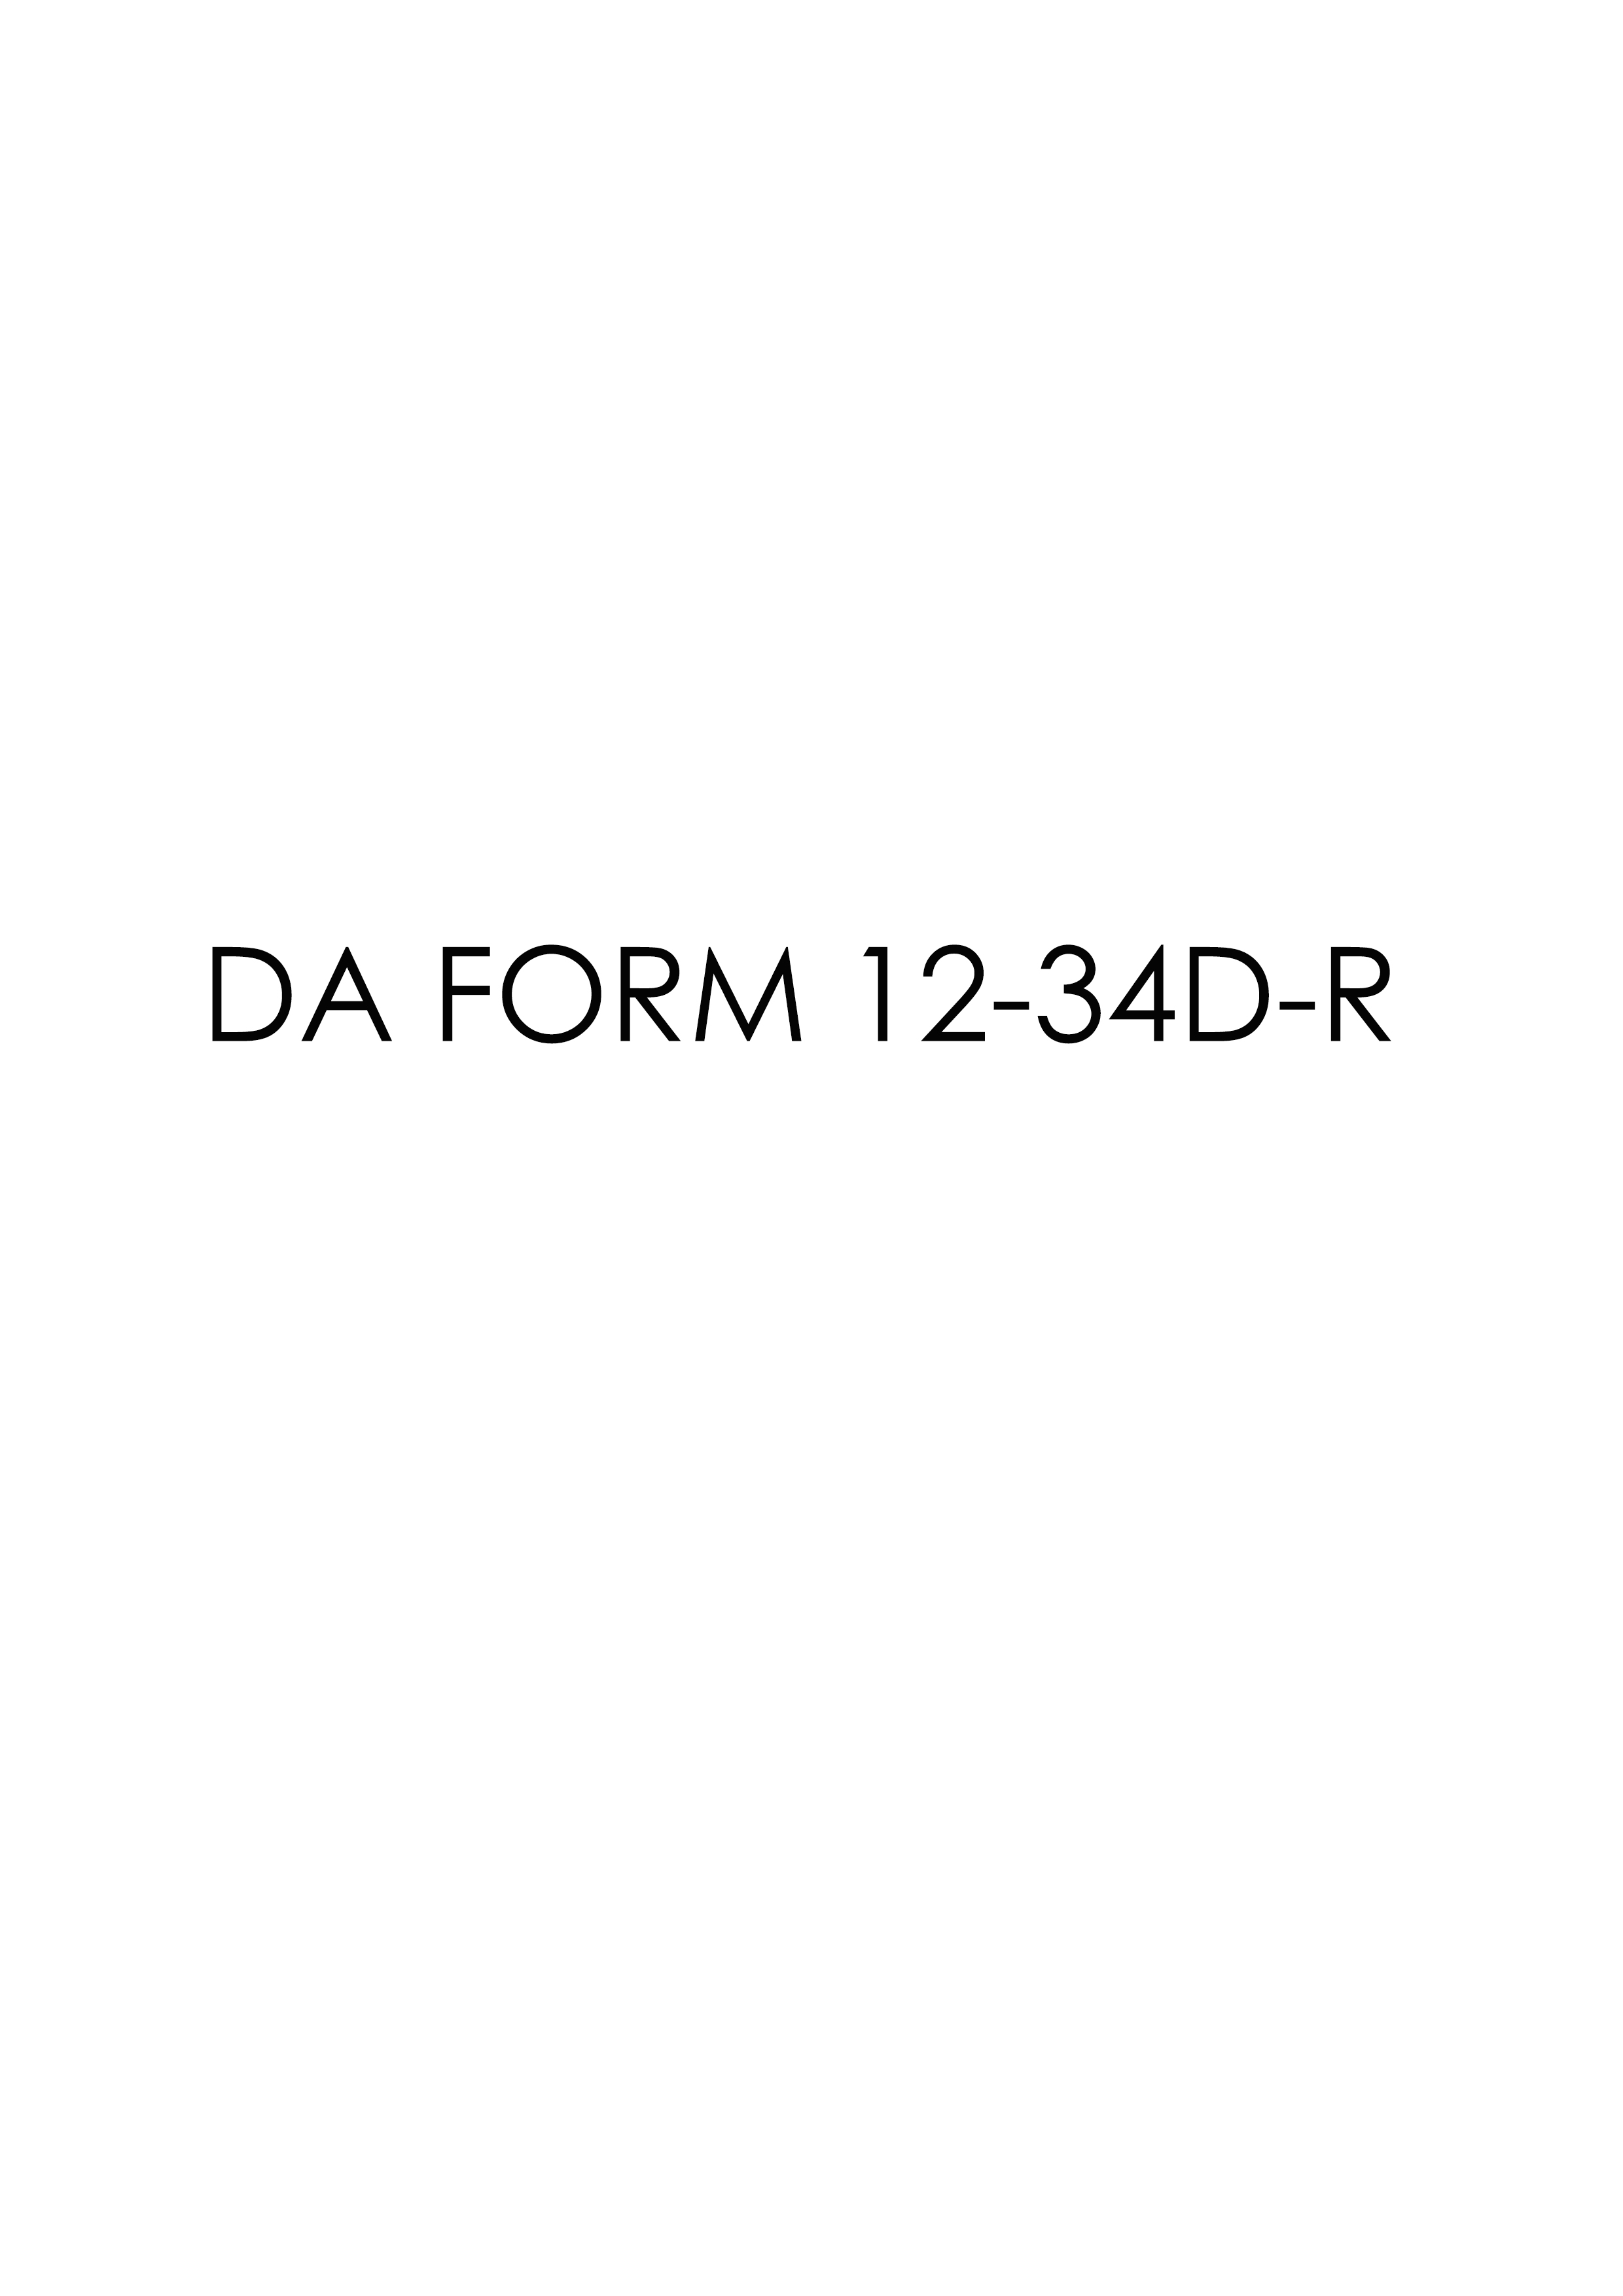 Download da 12-34D-R Form